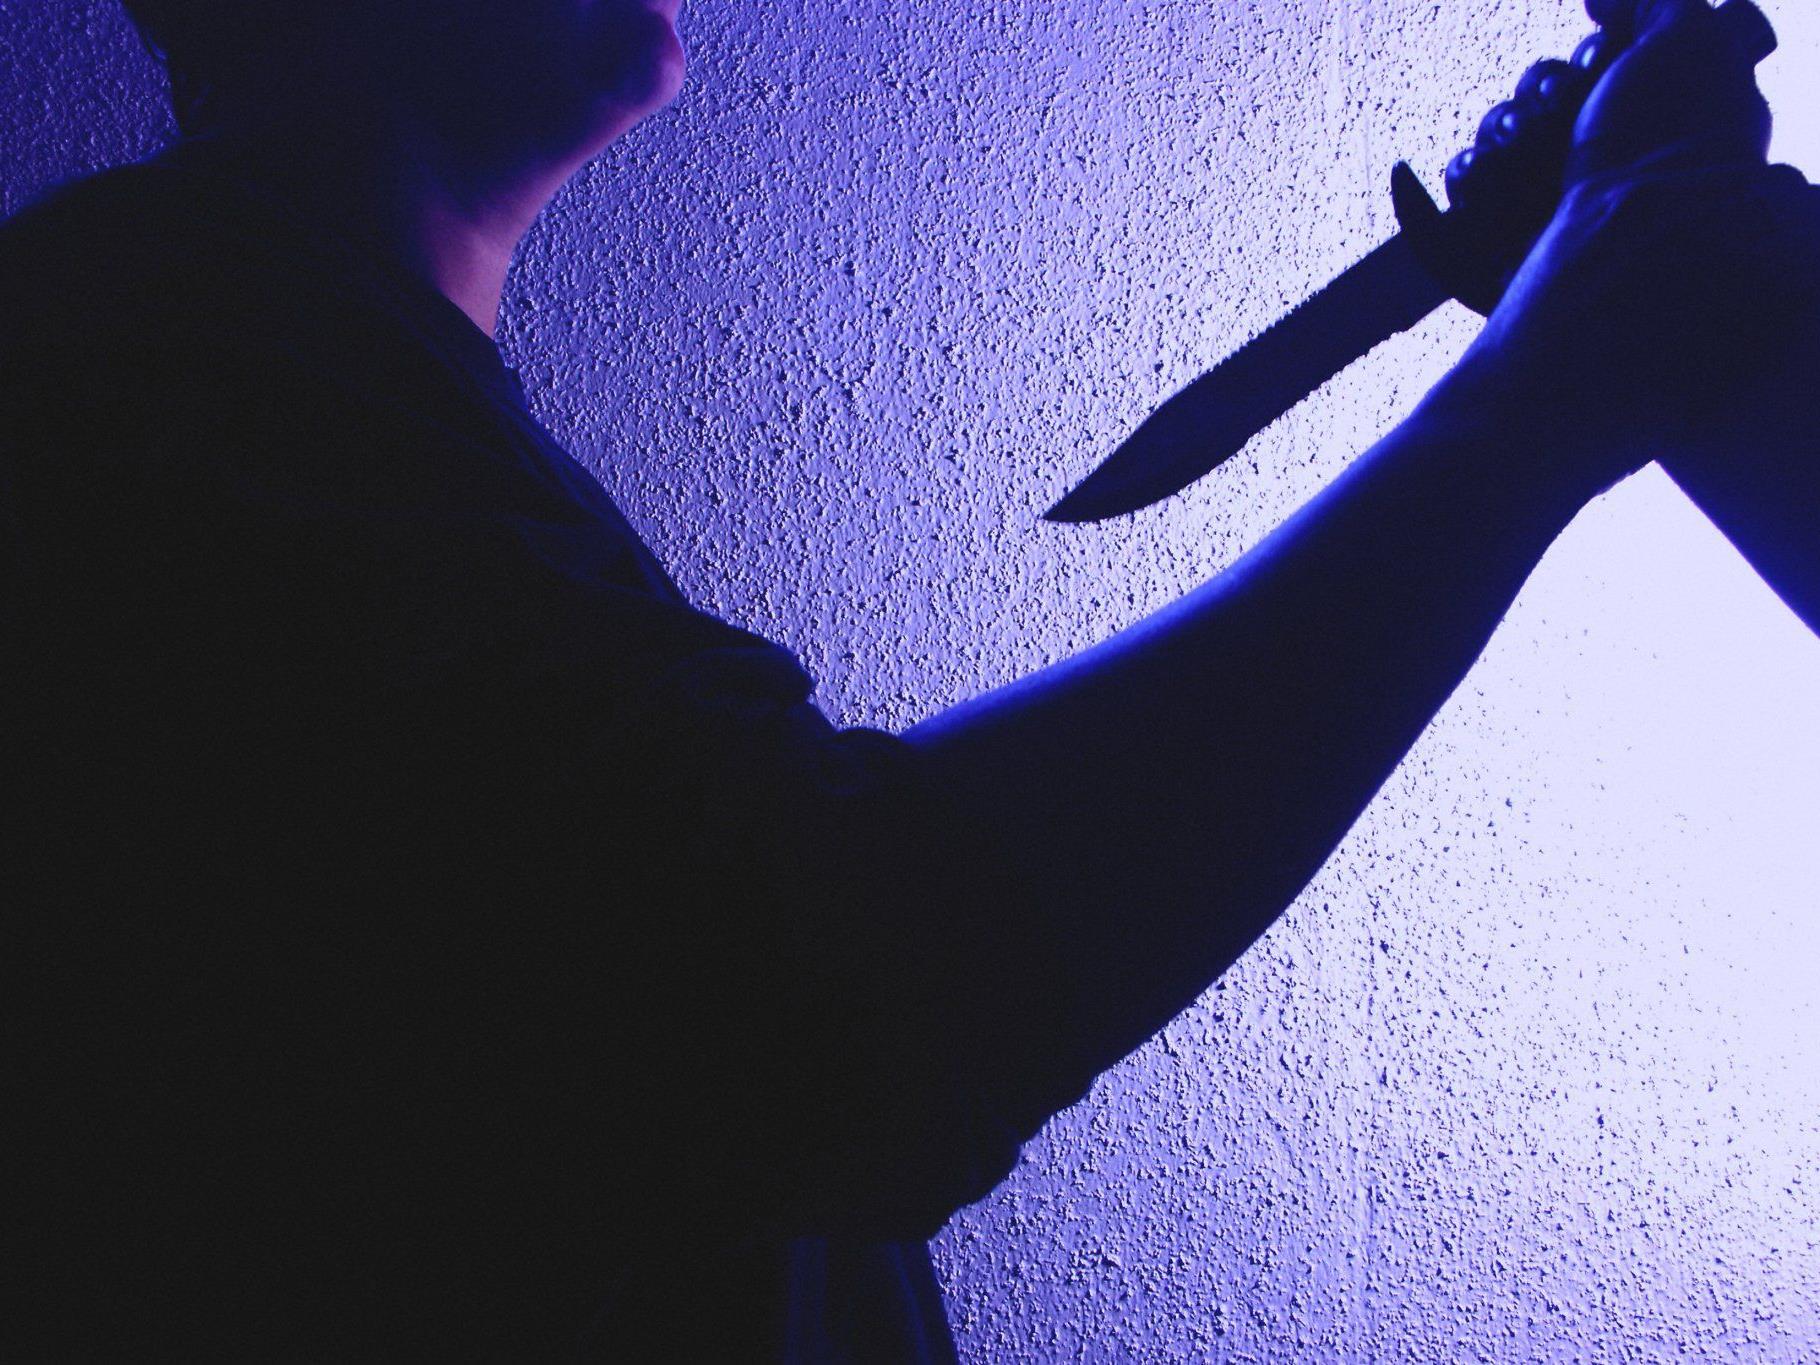 Der vorerst unbekannte Täter zückte das Messer und rammte es dem 18-Jährigen in den Bauch.